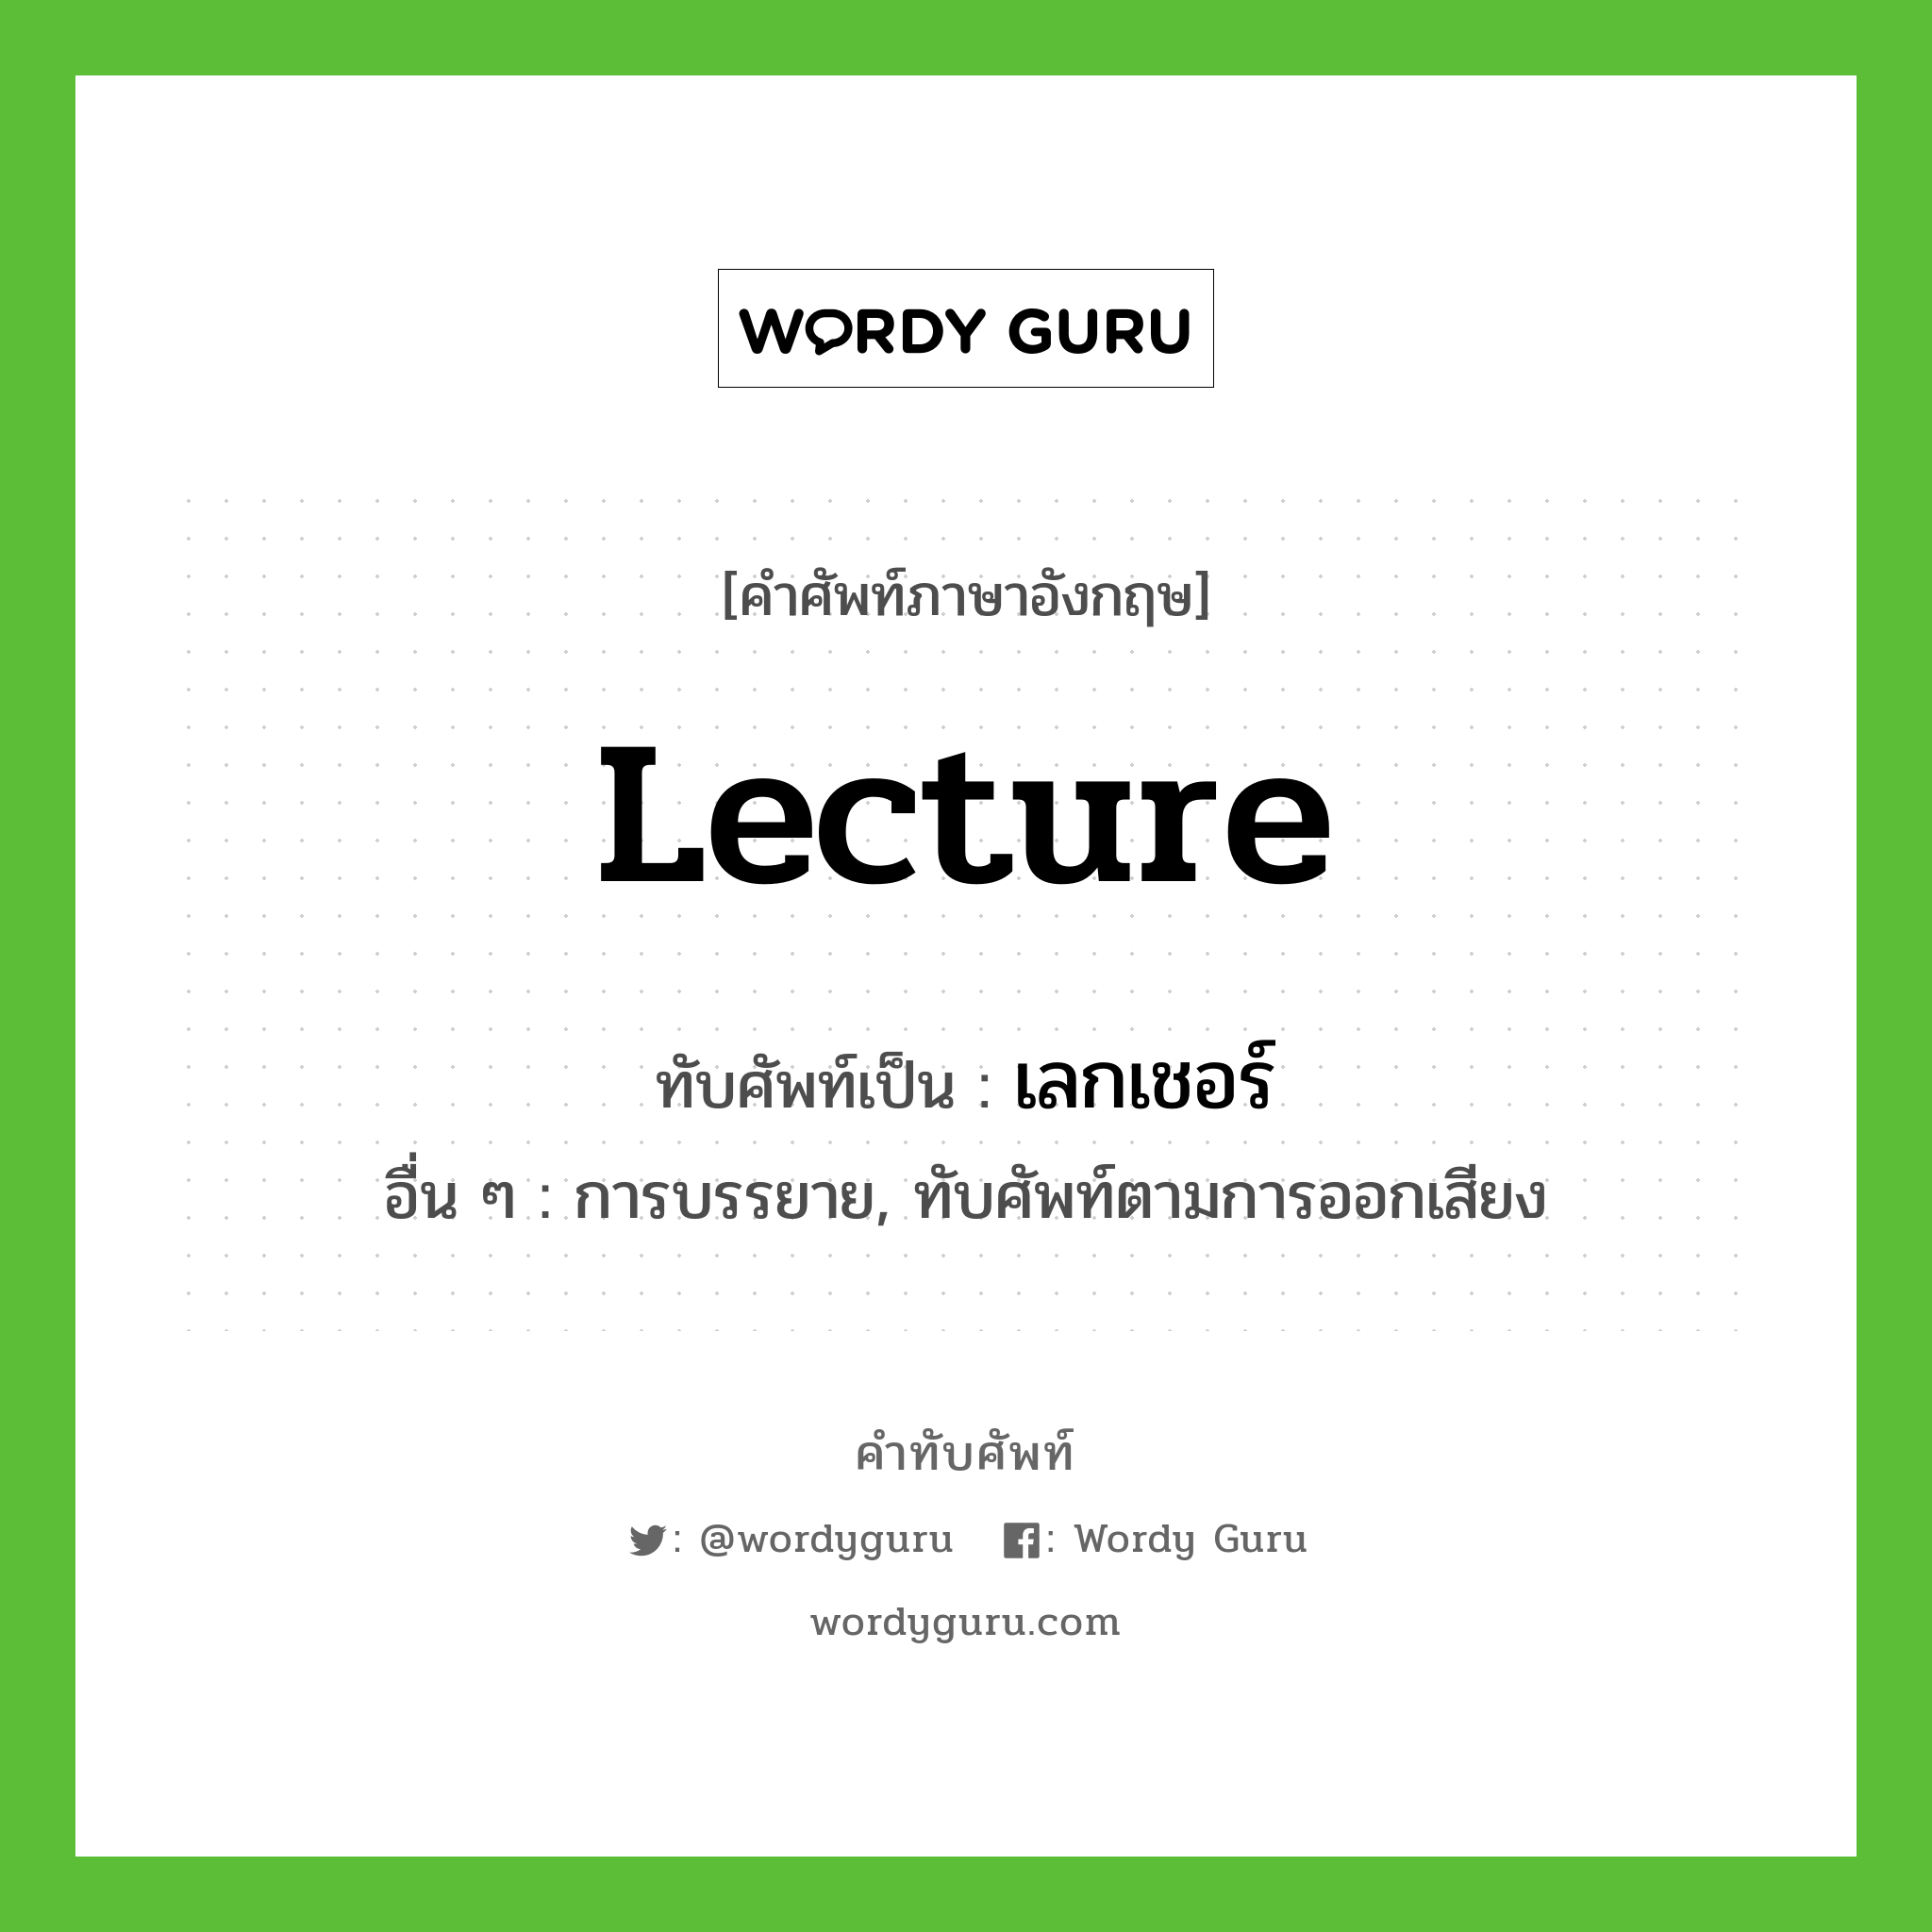 lecture เขียนเป็นคำไทยว่าอะไร?, คำศัพท์ภาษาอังกฤษ lecture ทับศัพท์เป็น เลกเชอร์ อื่น ๆ การบรรยาย, ทับศัพท์ตามการออกเสียง